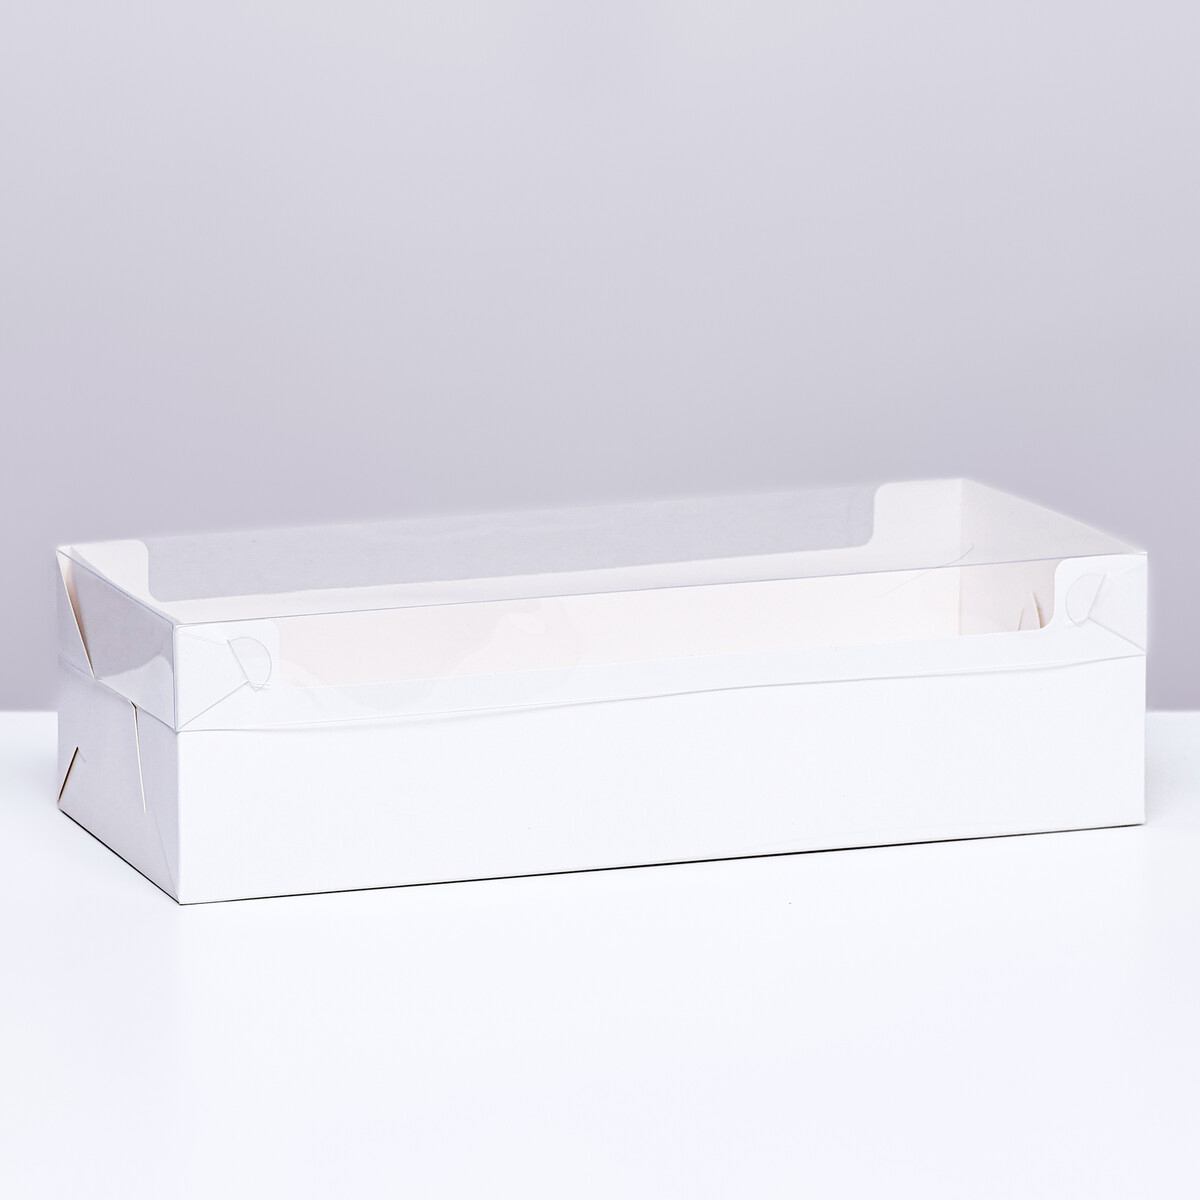 Коробка под рулет белая, 30 х 11 х 8 см коробка под рулет белая 30 х 12 х 12 см